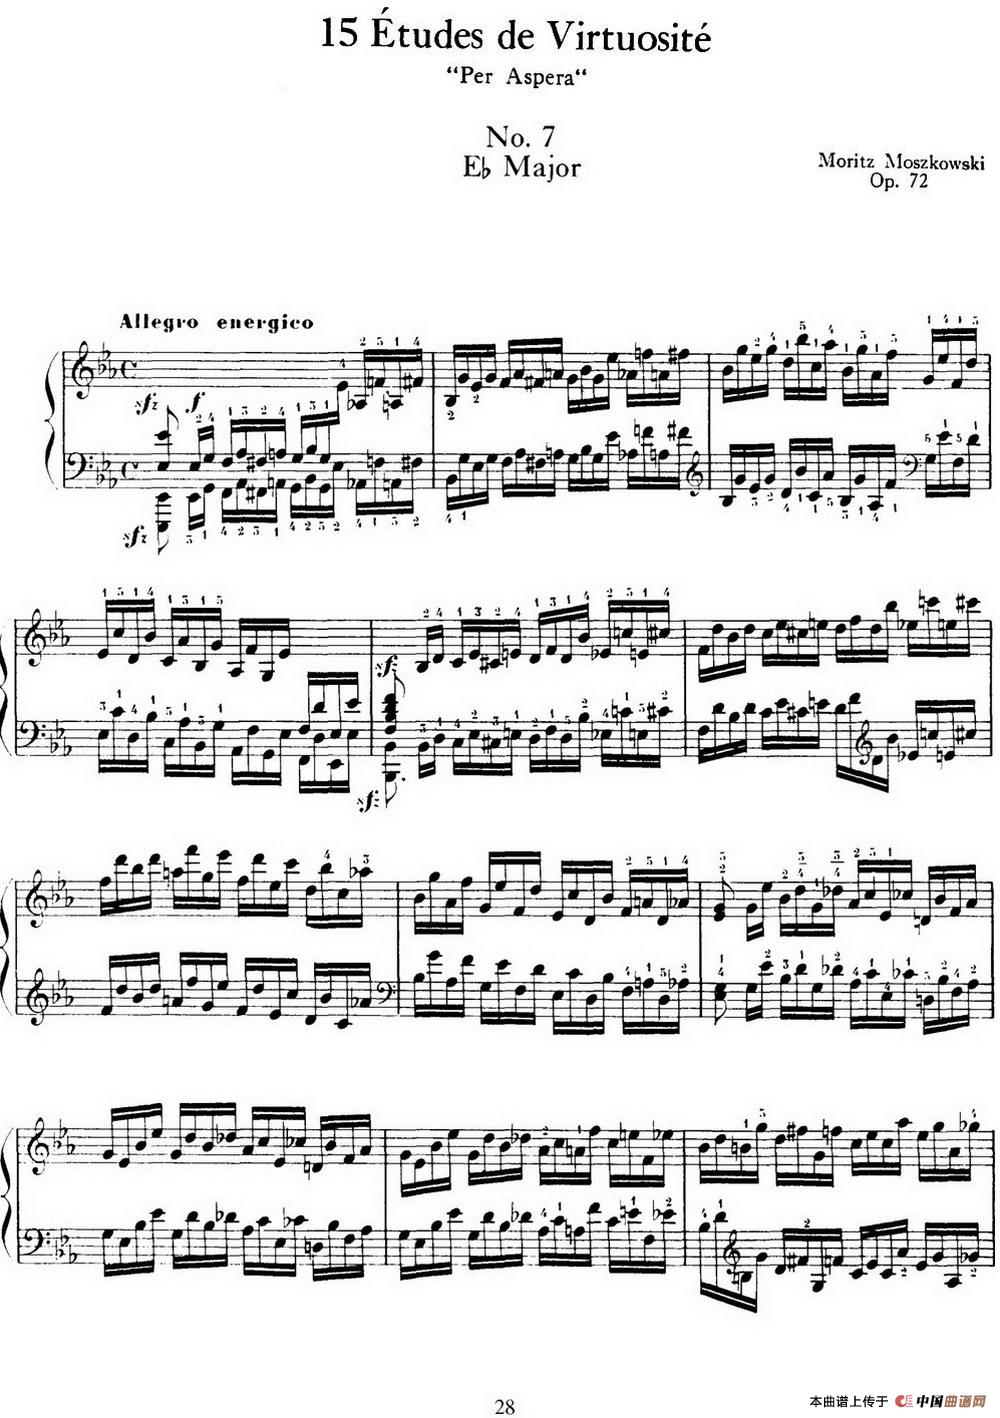 15 Etudes de Virtuosité Op.72 No.7（十五首钢琴练习曲之七）(1)_028-.jpg